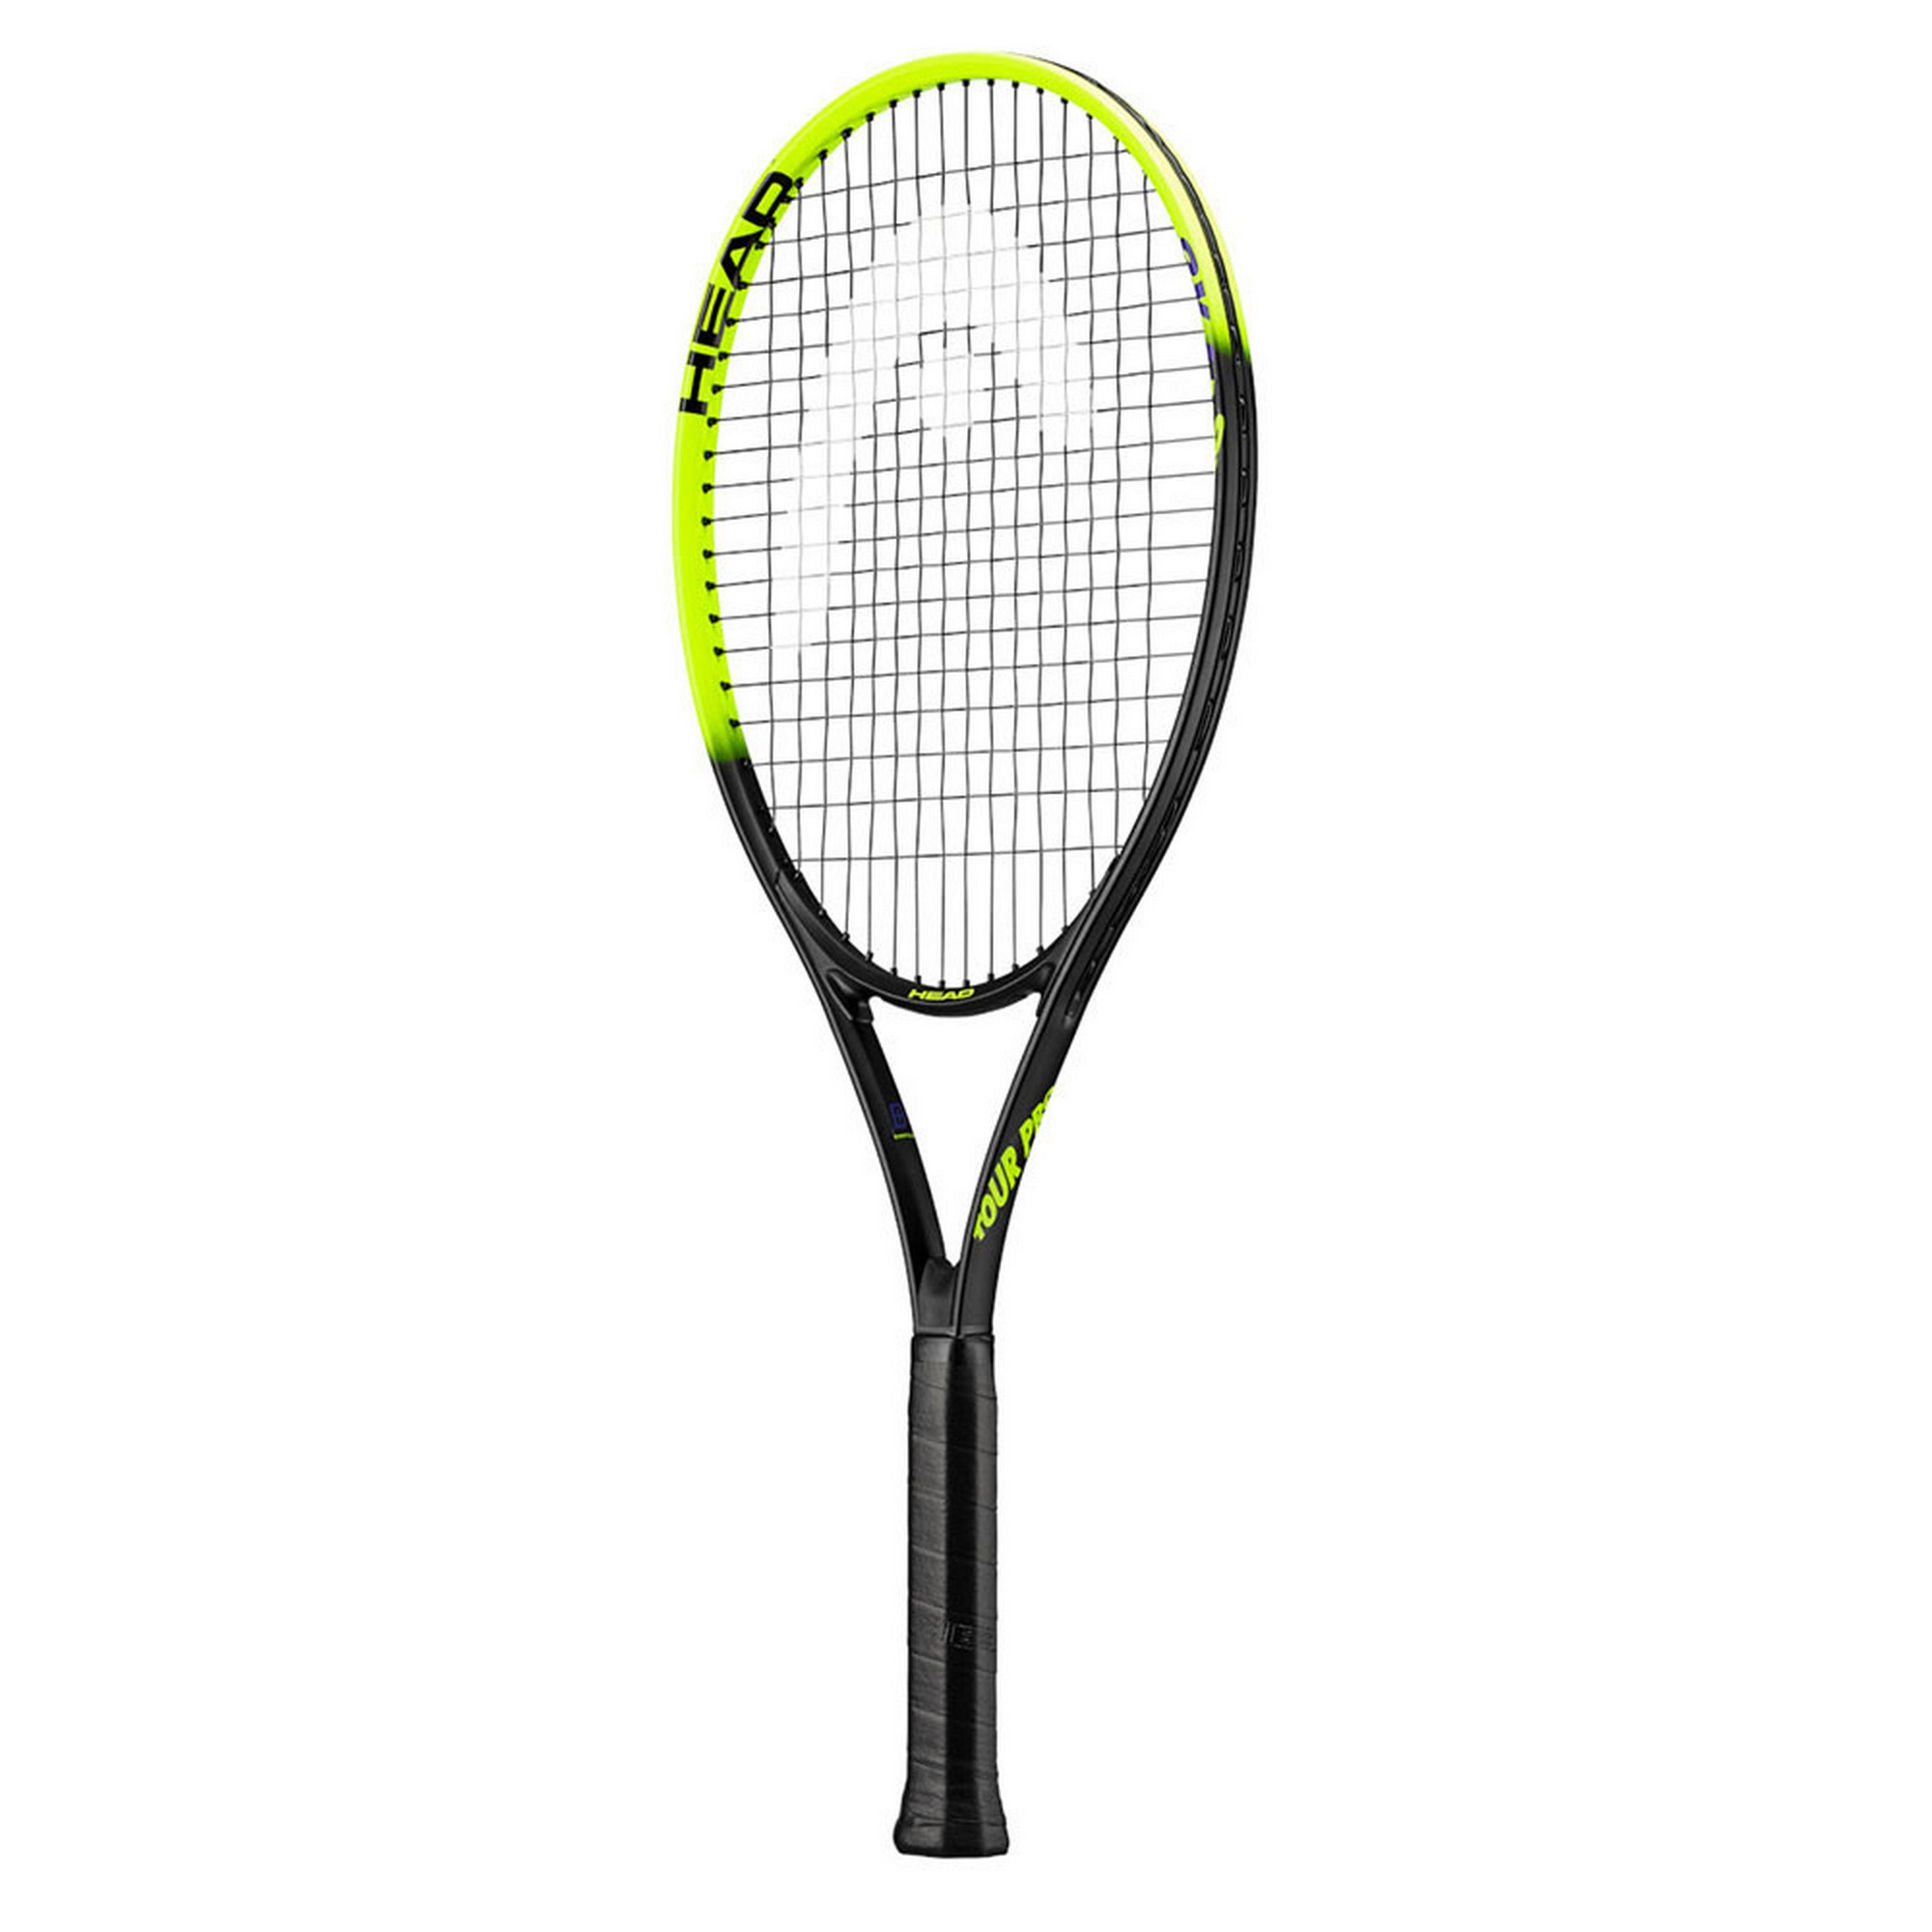 Купить Ракетка для большого тенниса Head Tour Pro Gr4 232219 желто-черный,